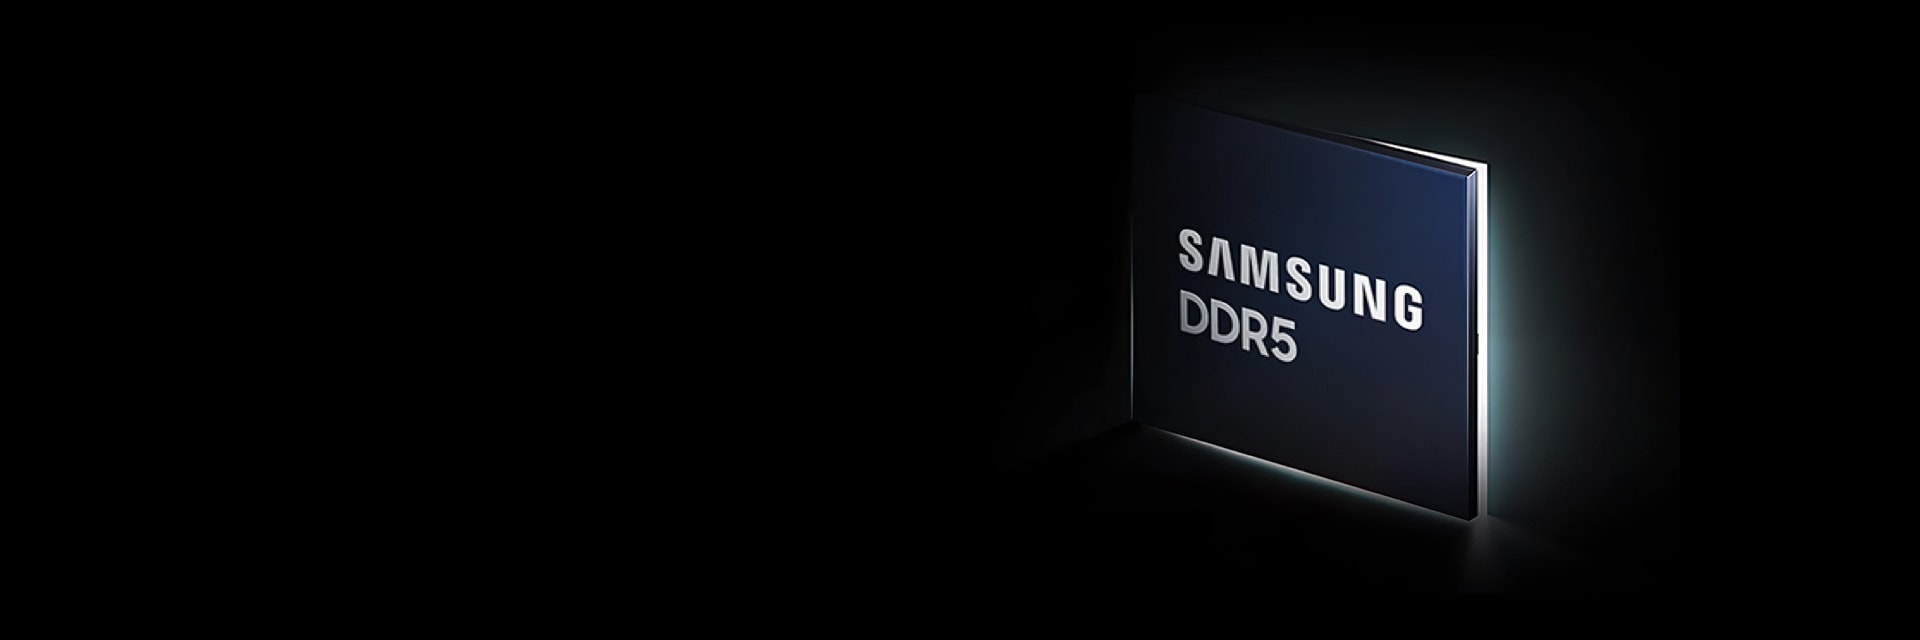 삼성반도체 DRAM DDR5.